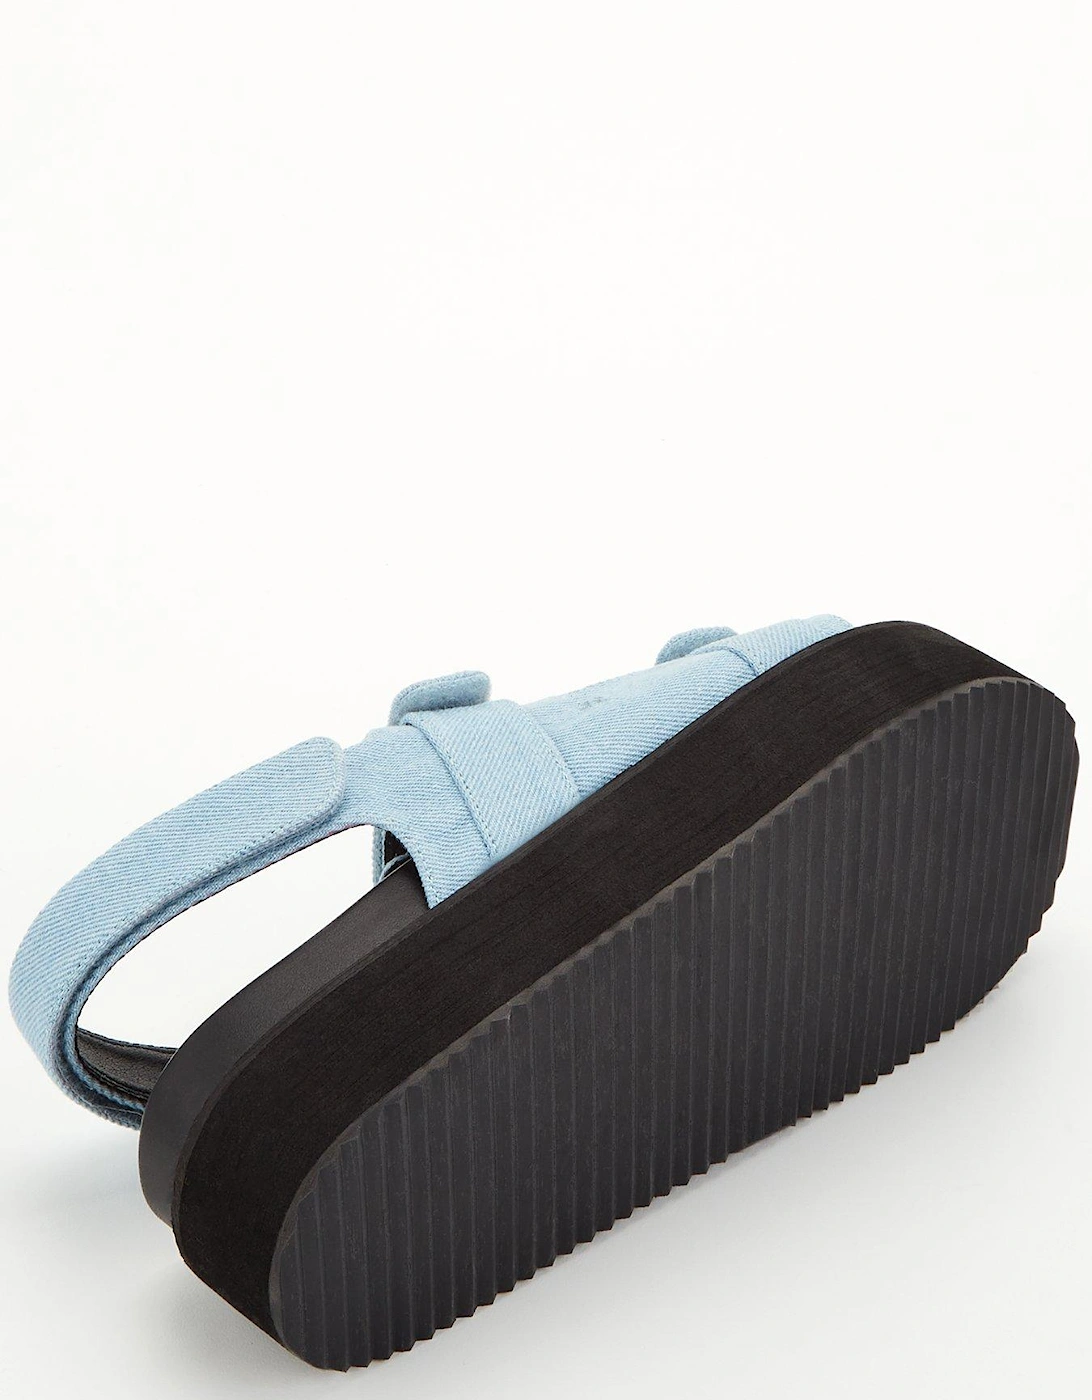 Akilina Platform Multi Strap Sandals - Blue 